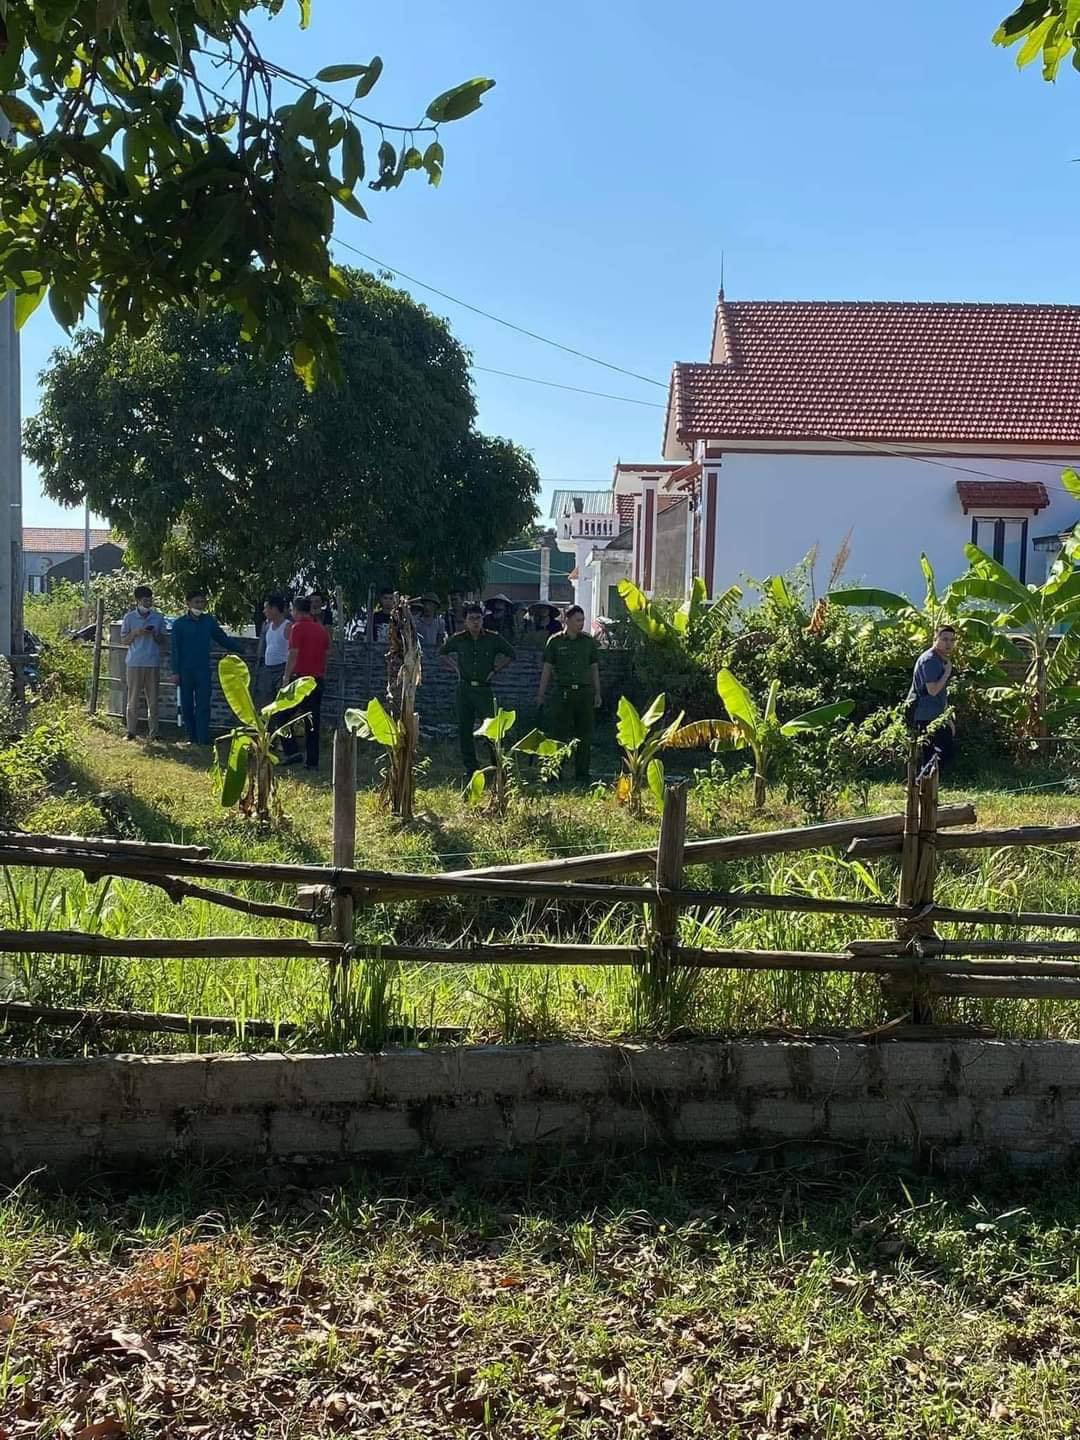 Án mạng kinh hoàng ở Quảng Ninh: Chém hàng xóm tử vong, lấy chăn trùm kín thi thể, rồi đi tự thú